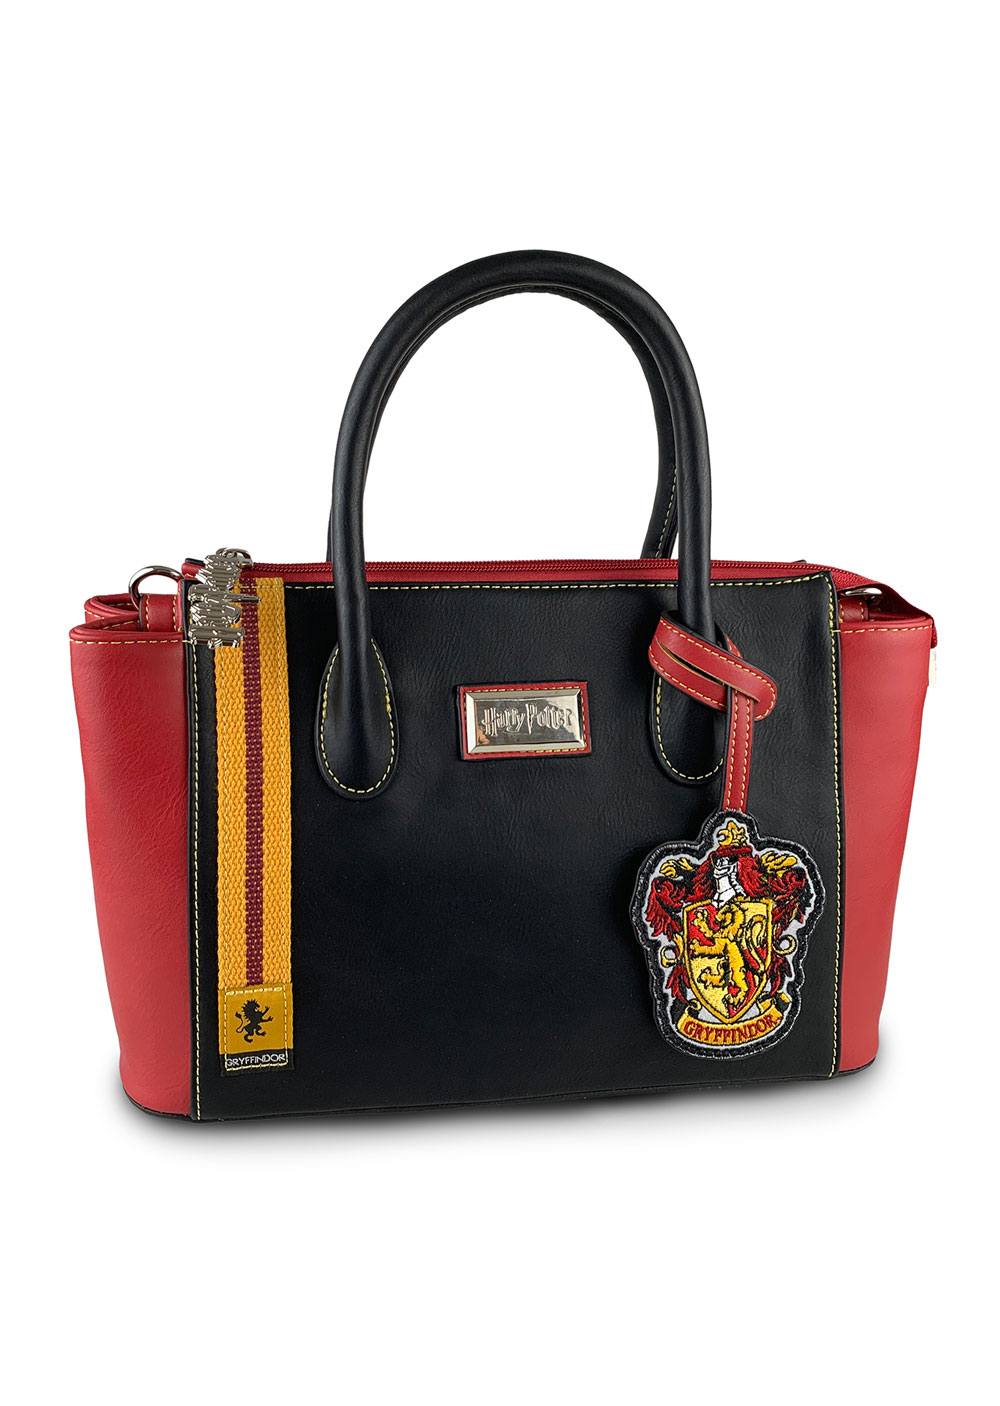 Harry Potter Handbag Gryffindor